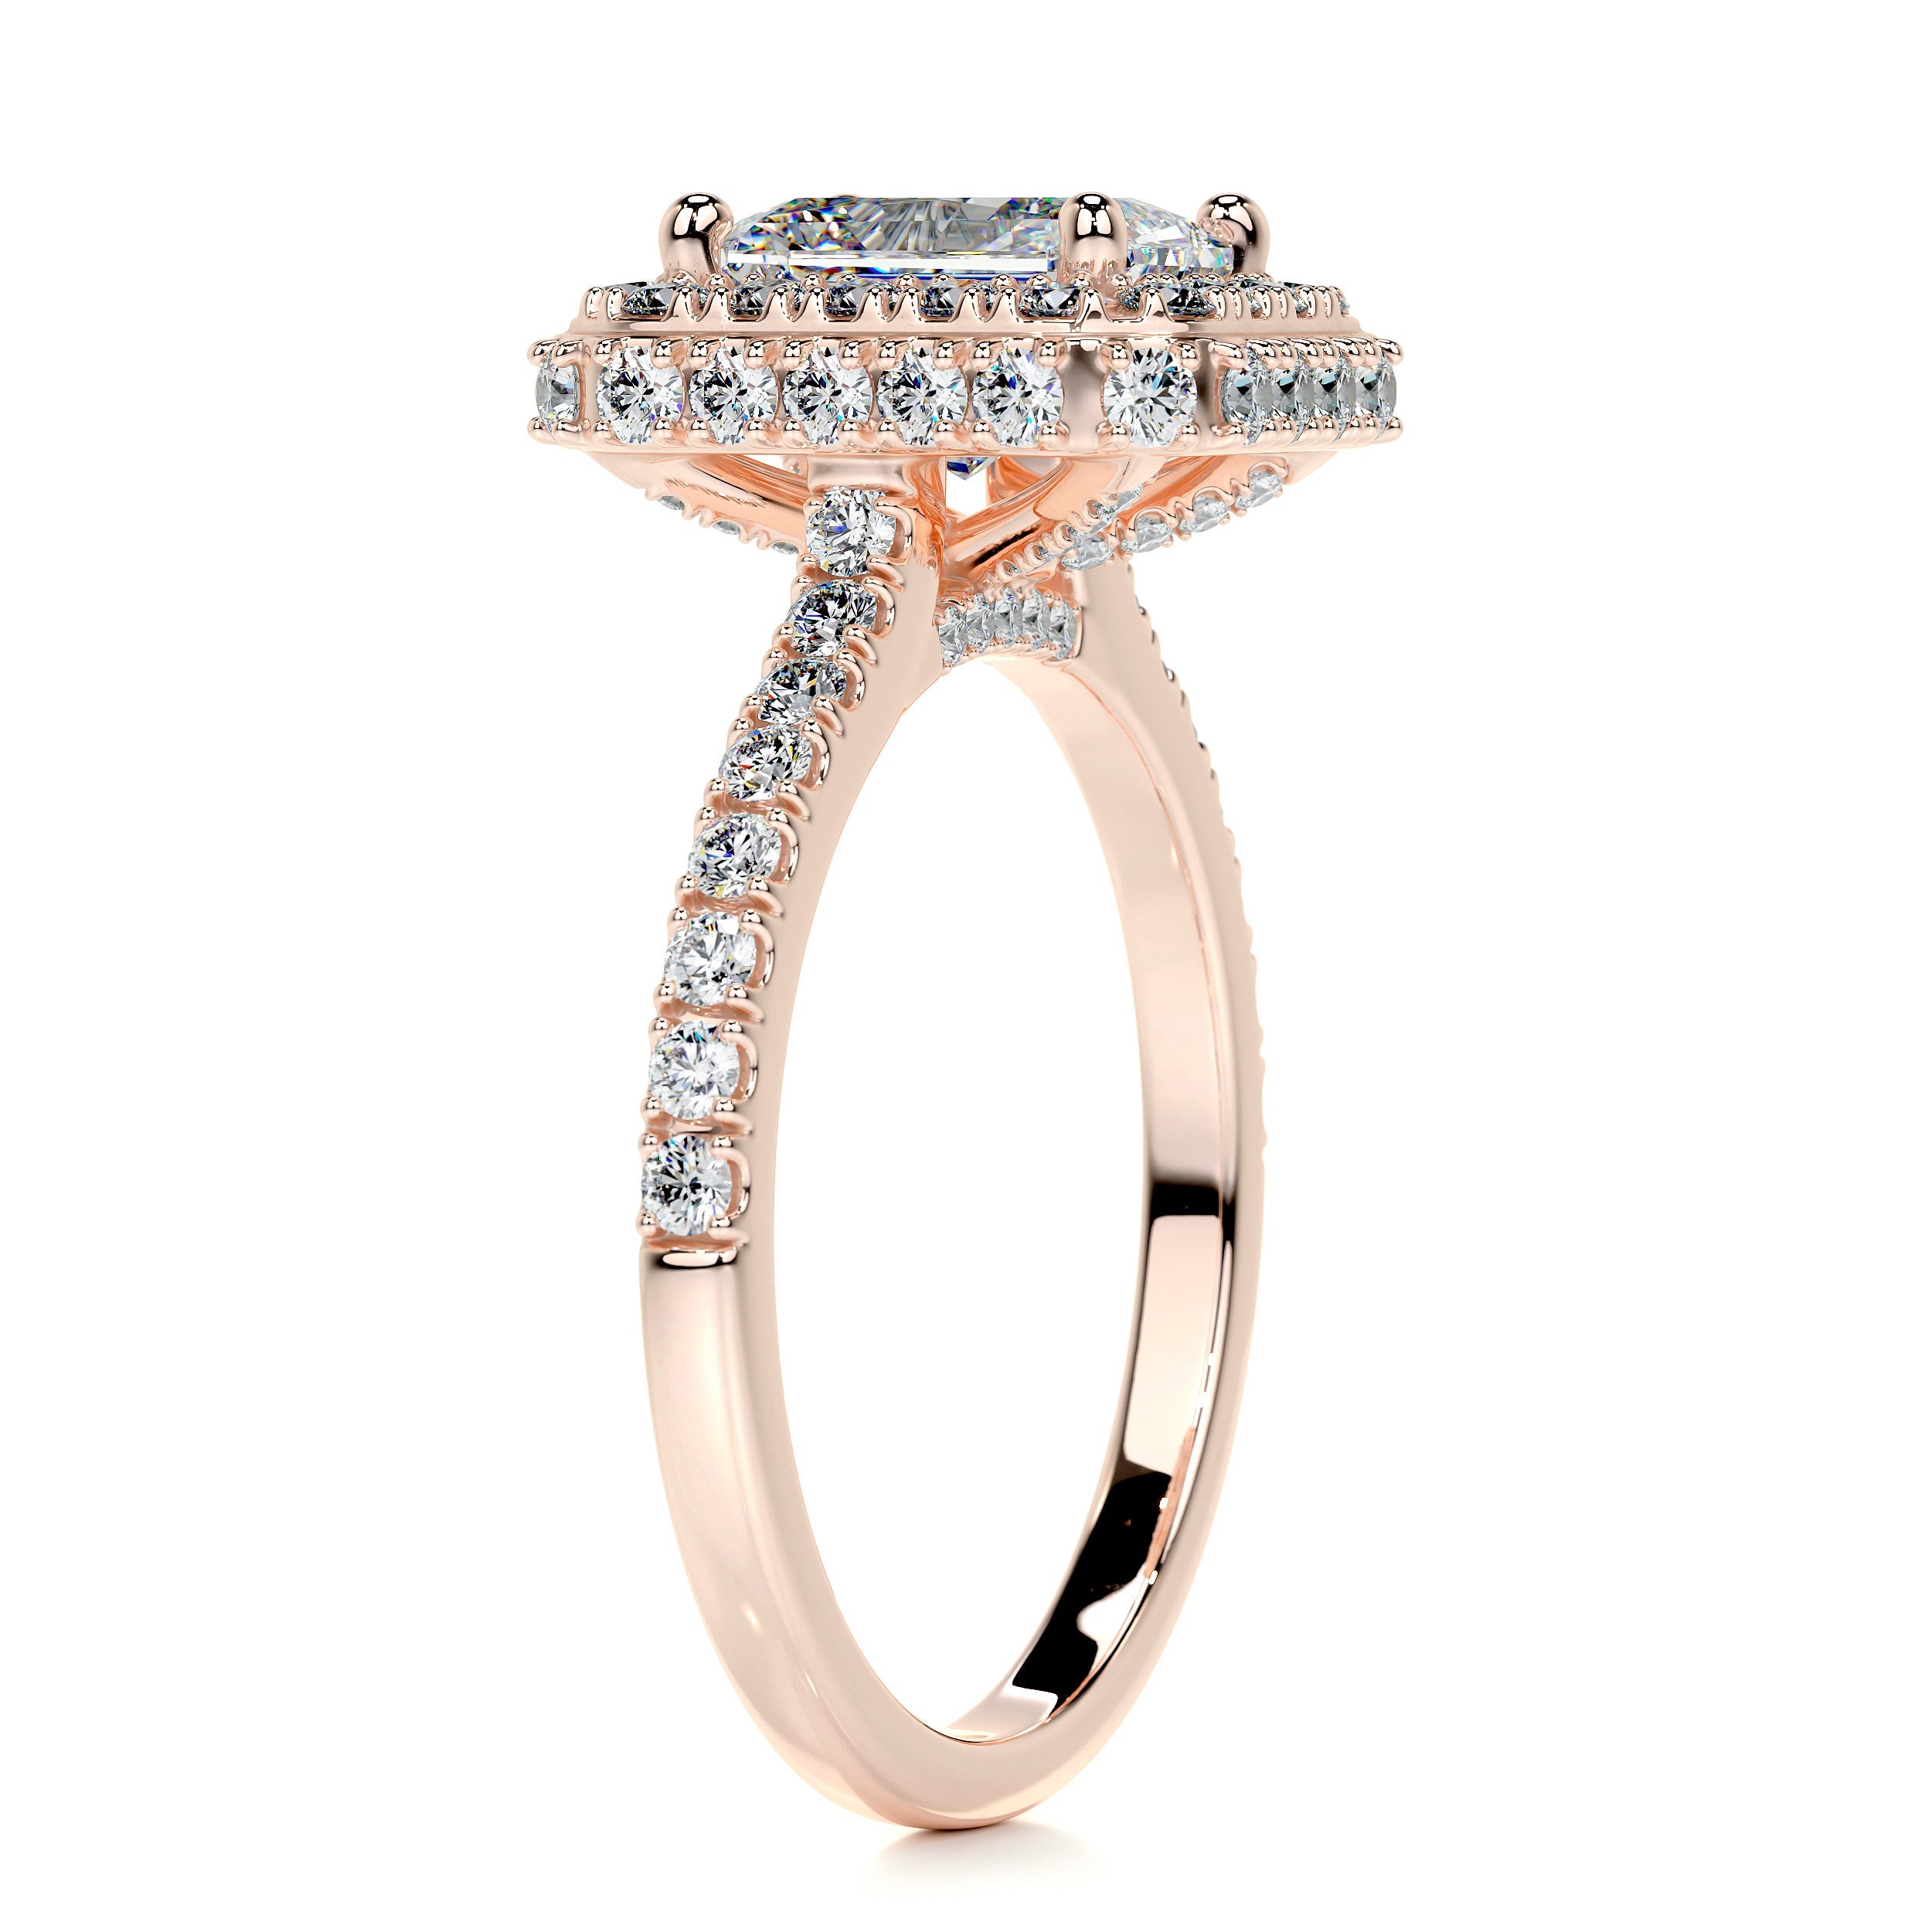 Lana Moissanite & Diamonds Ring   (2.5 Carat) -14K Rose Gold